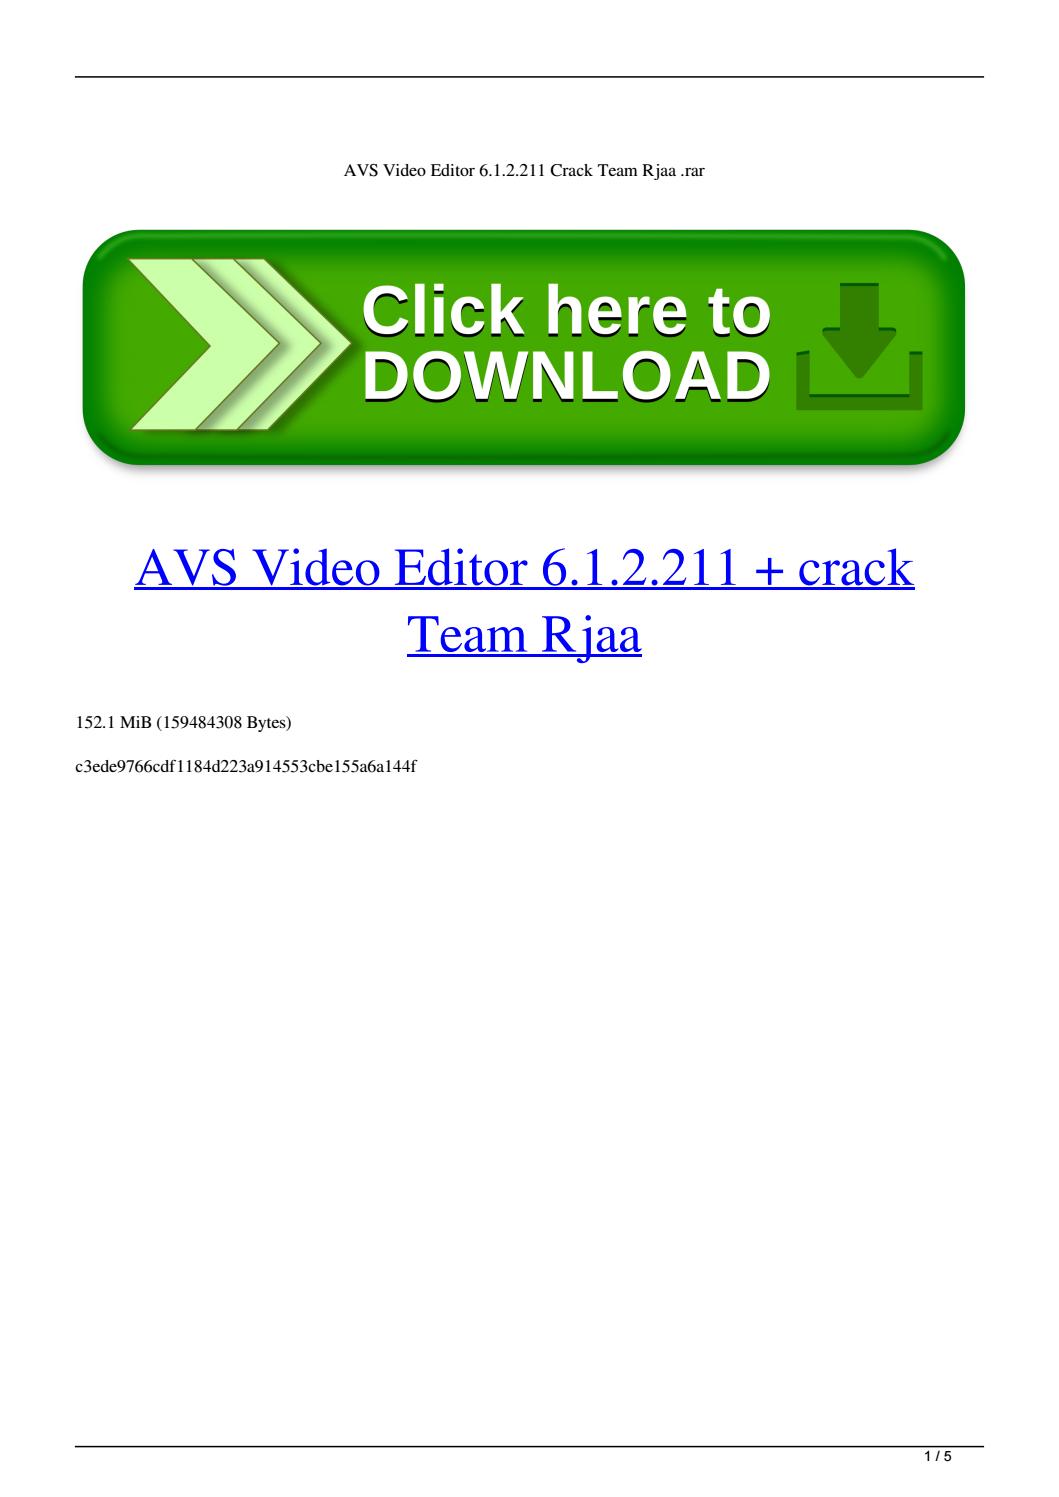 avs video editor 9.1 activation key